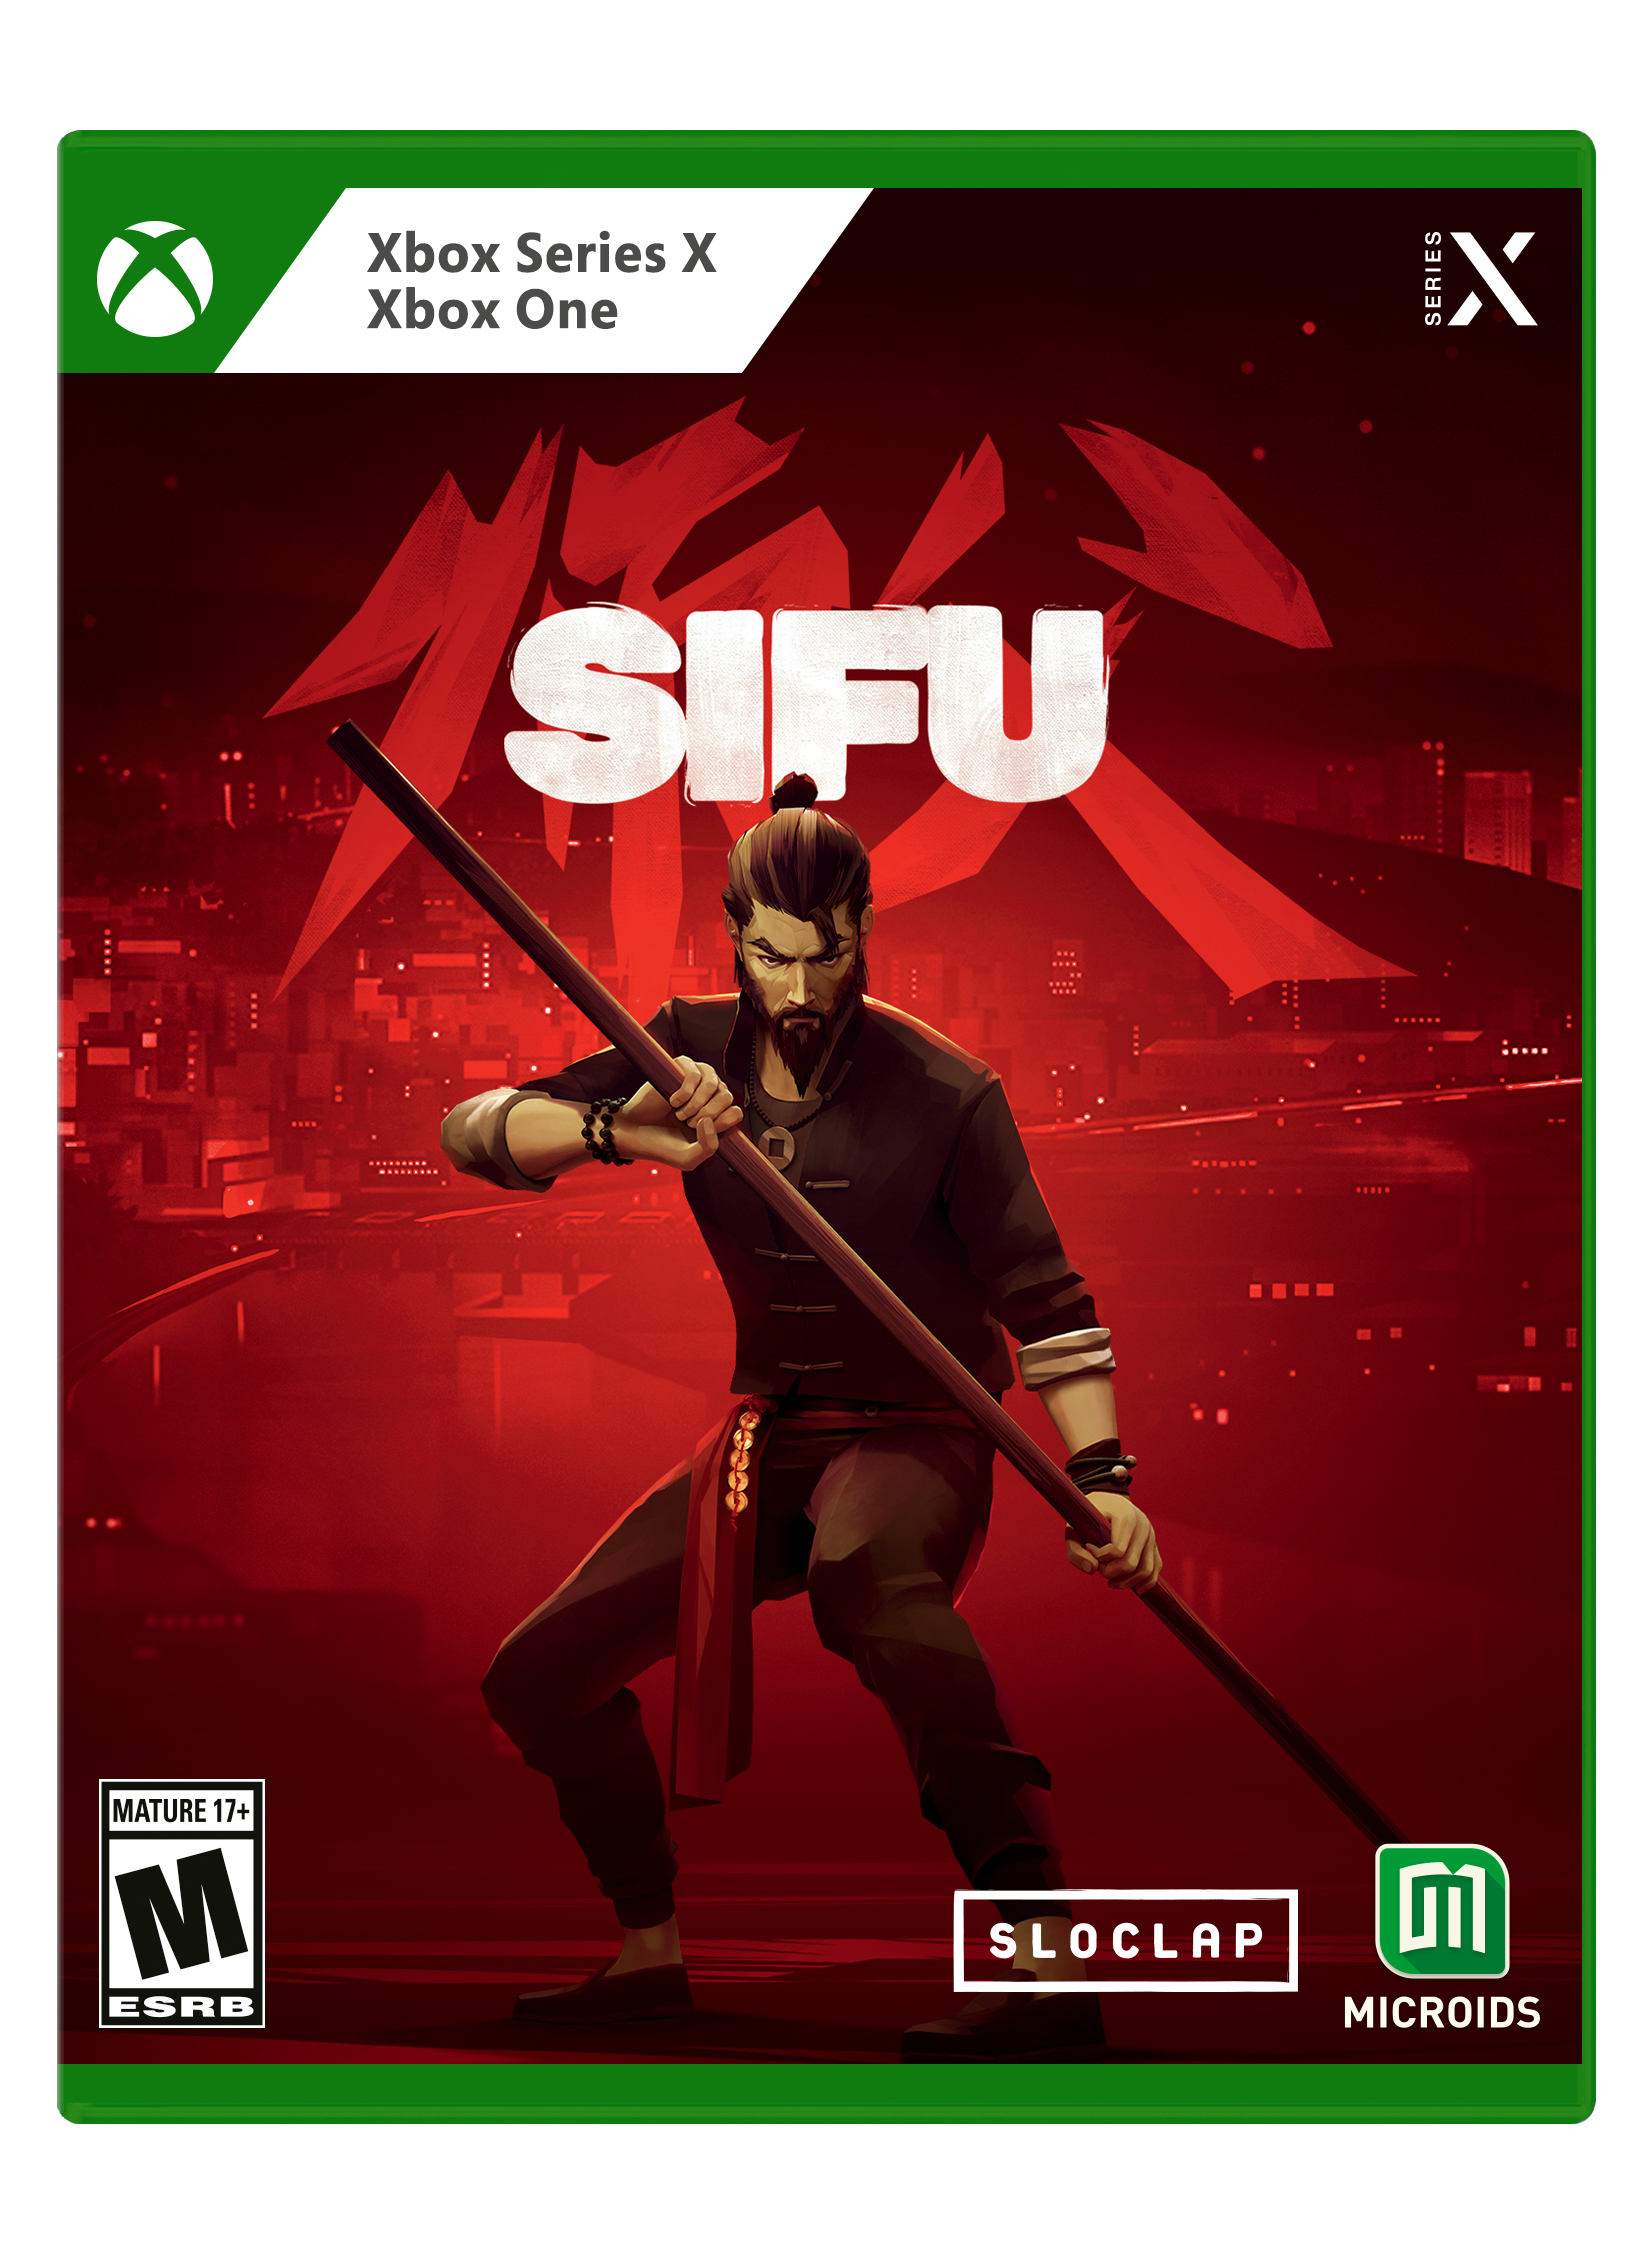 Central Xbox on X: Quer ganhar uma cópia do jogo #SAPU